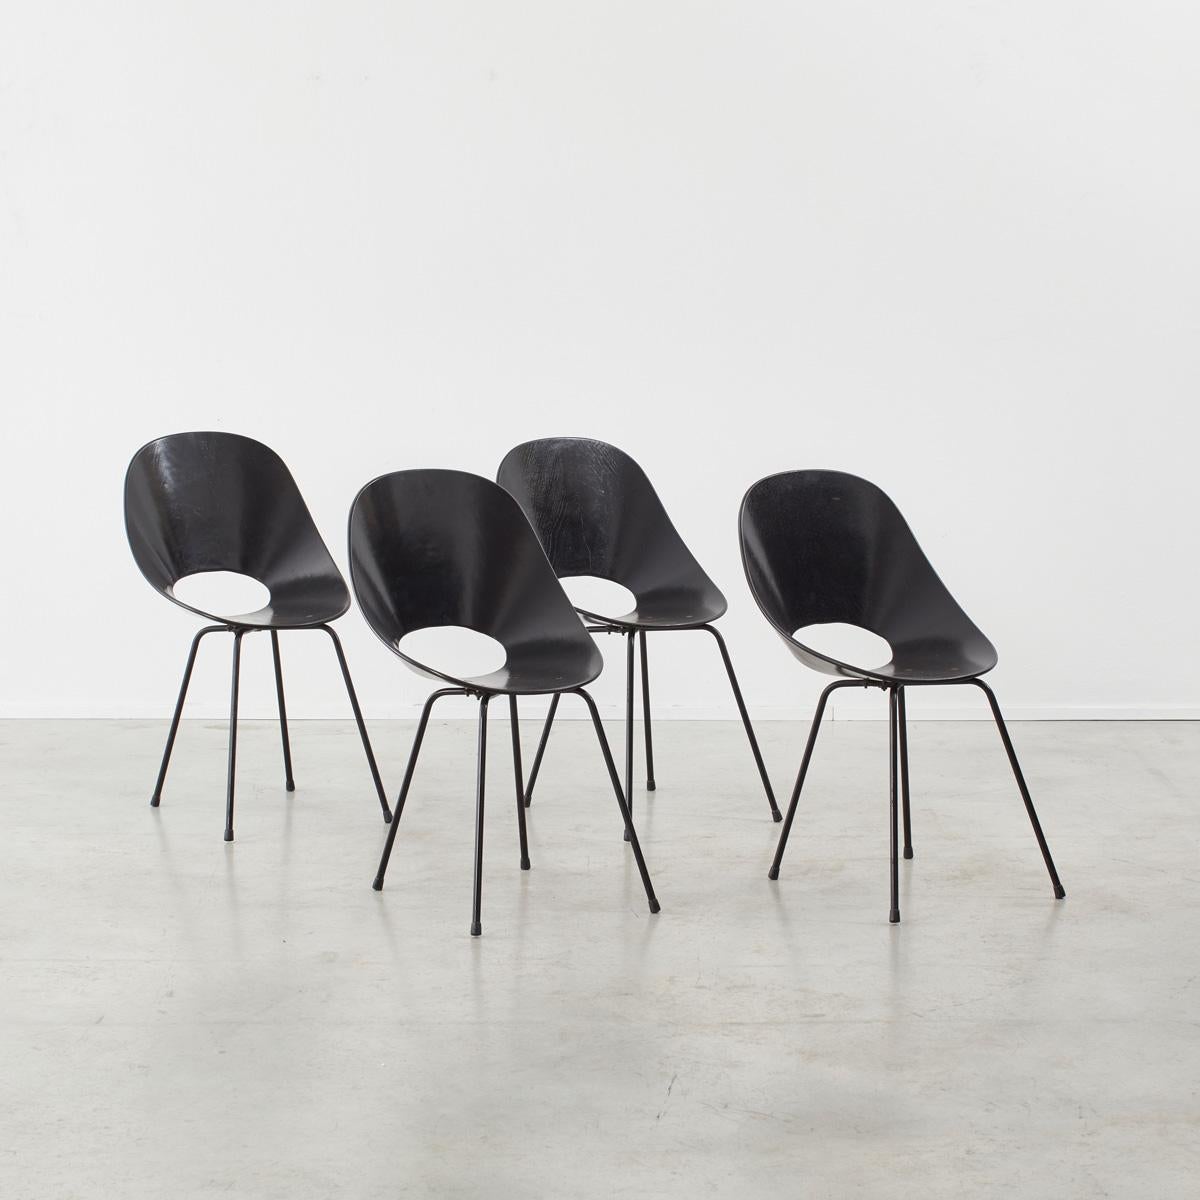 Représentation parfaite du style moderne organique, les chaises 